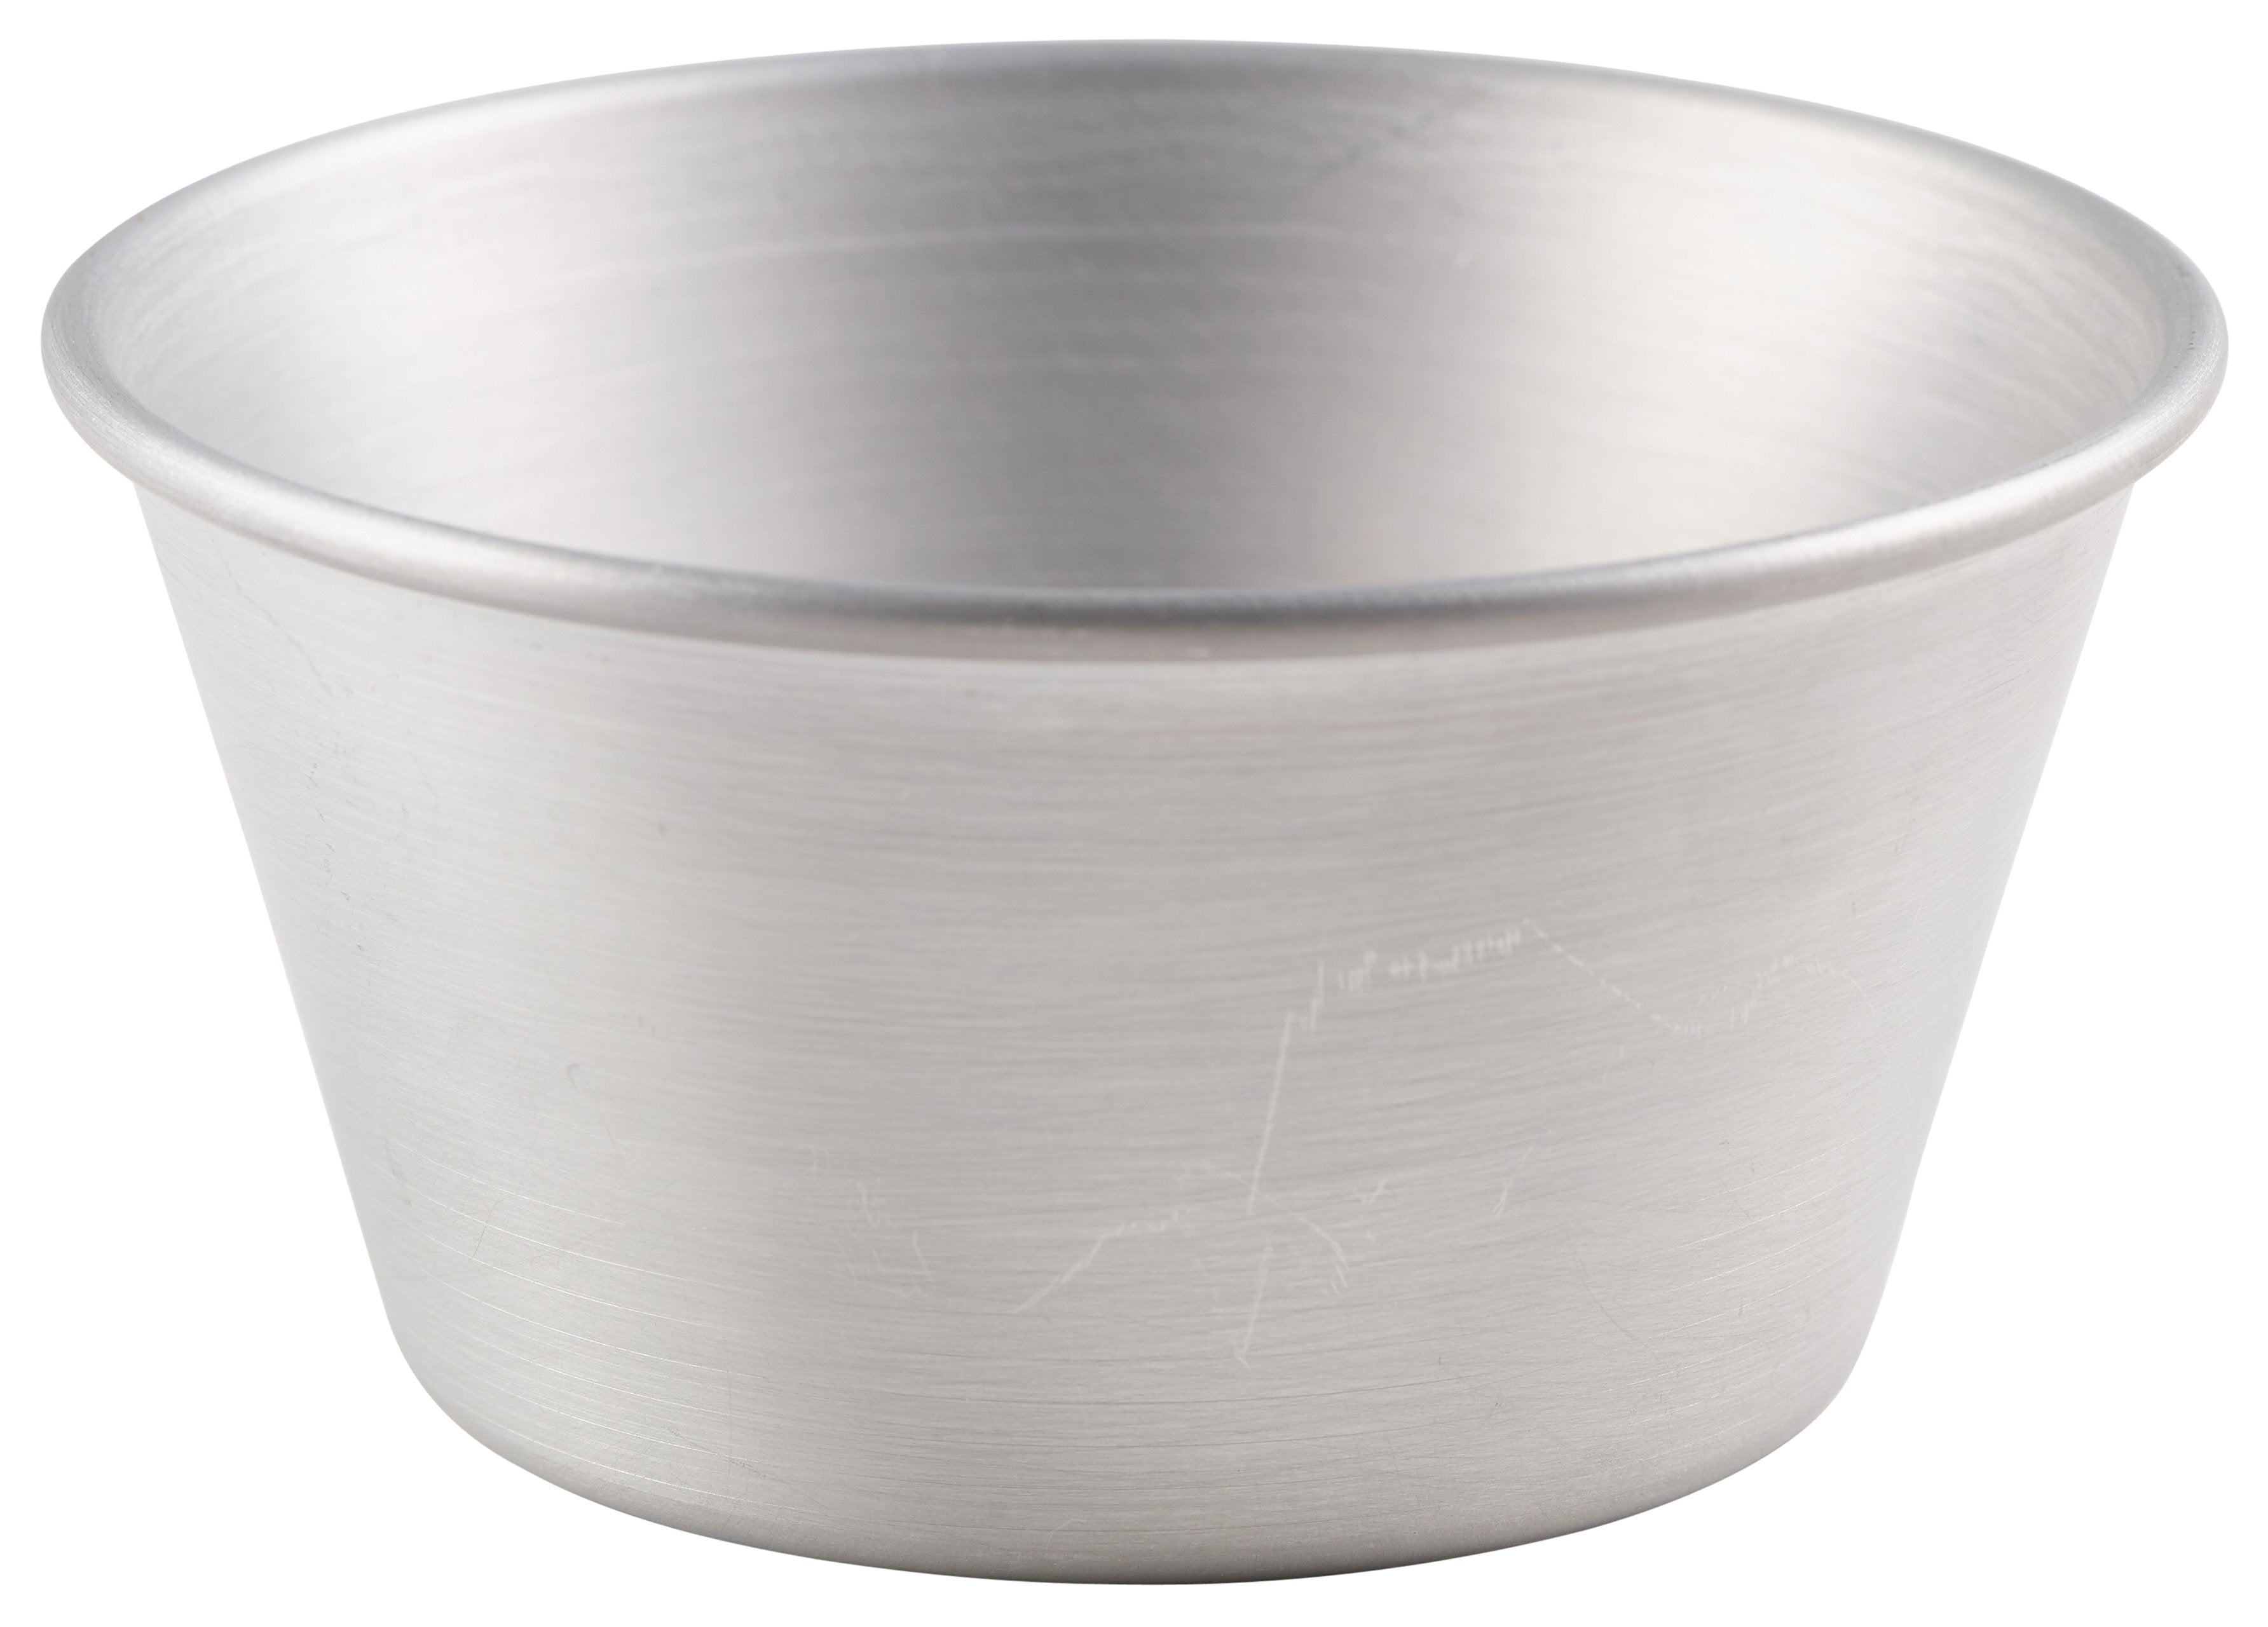 Aluminium Pudding Basin 335ml